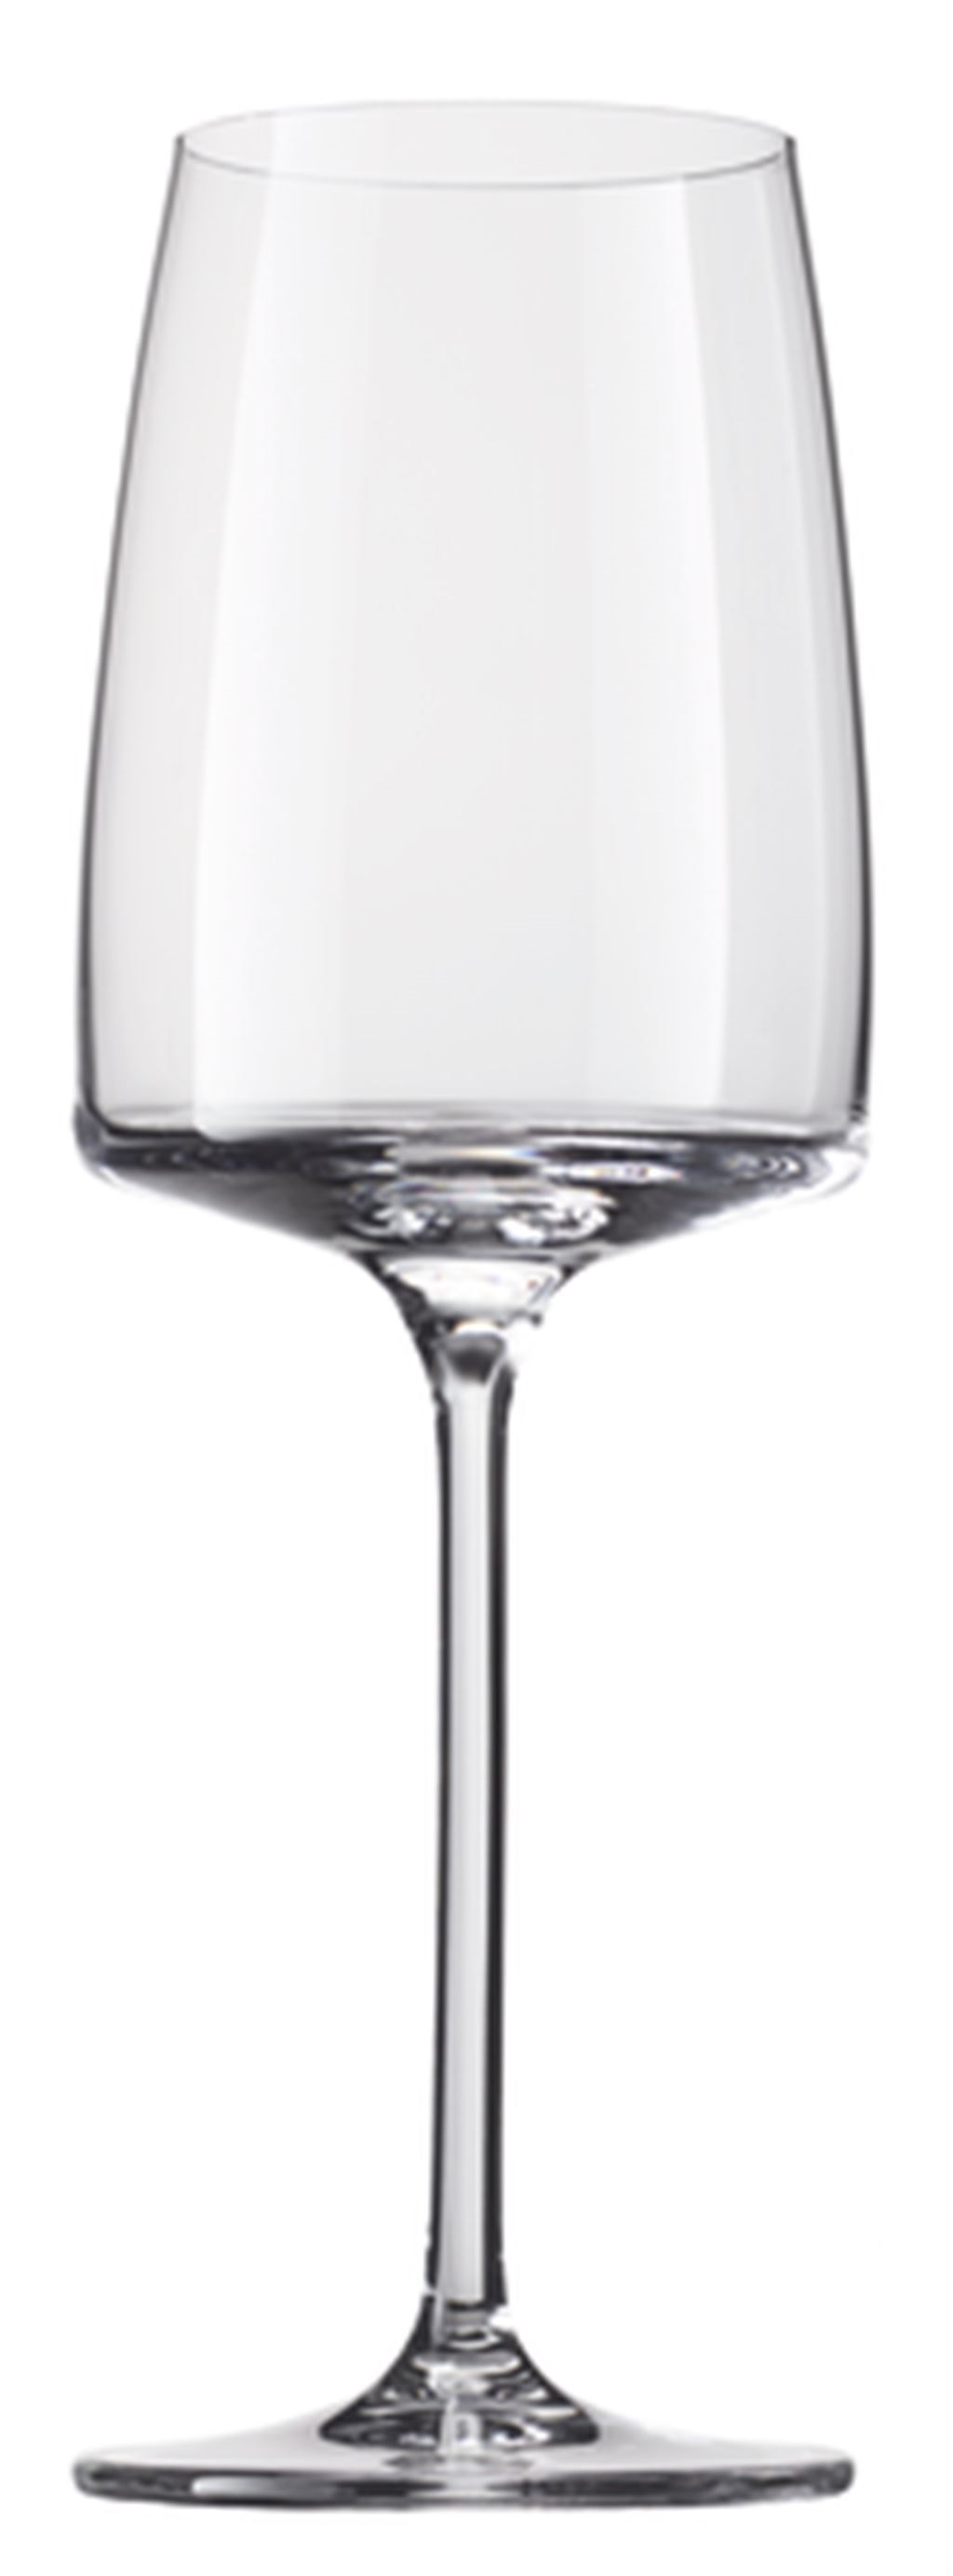 Zwiesel glas, sensa, kozarec za belo vino, 363 ml, 1 kos